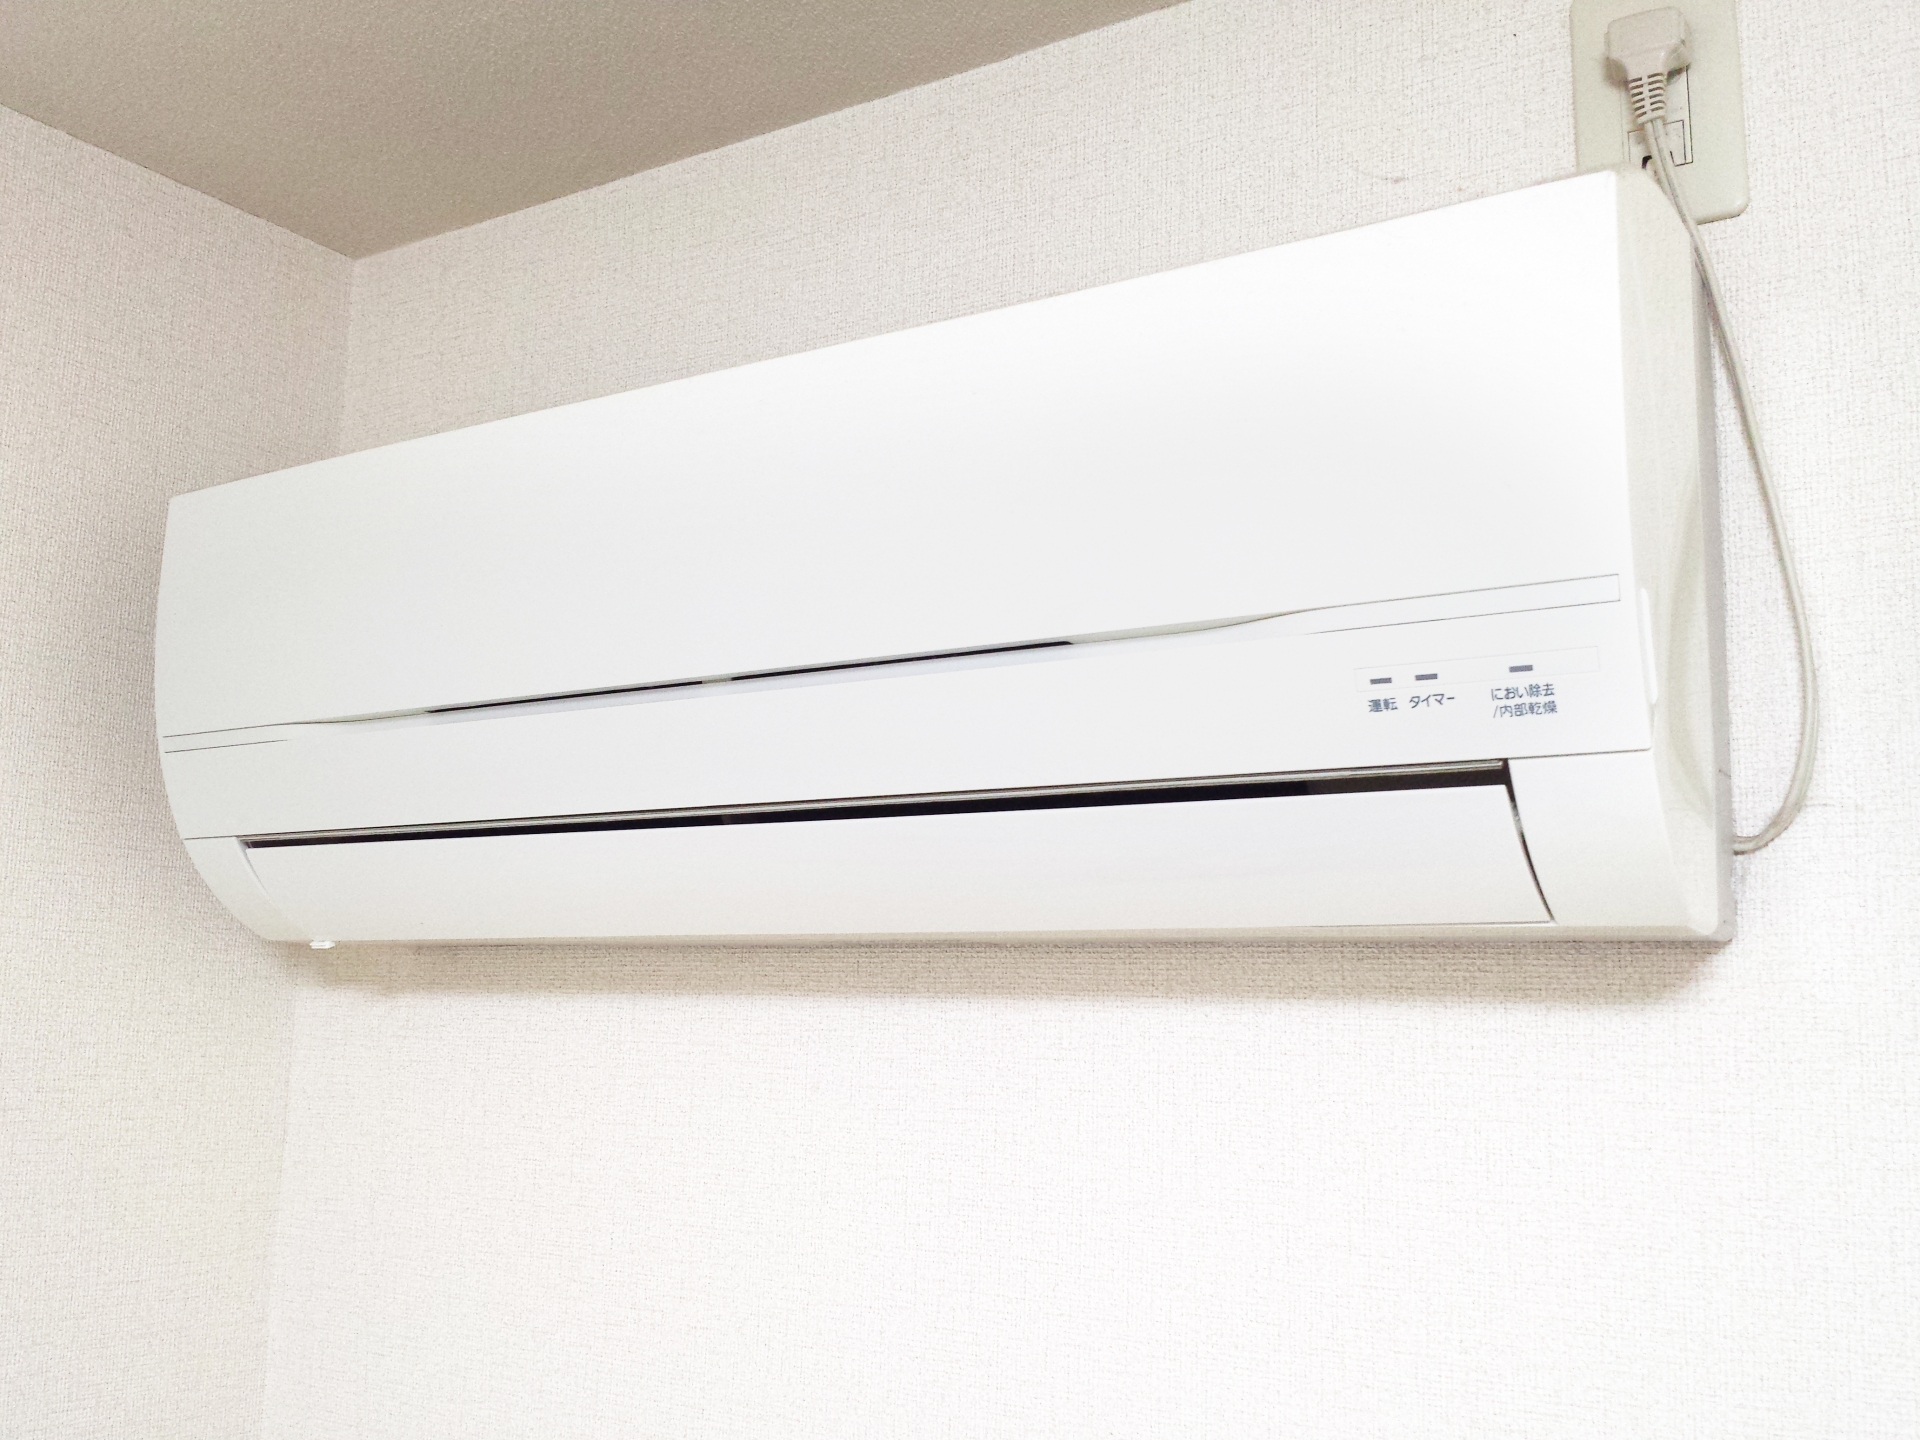 暖房の設定温度の目安を紹介。20℃でも快適に過ごす方法